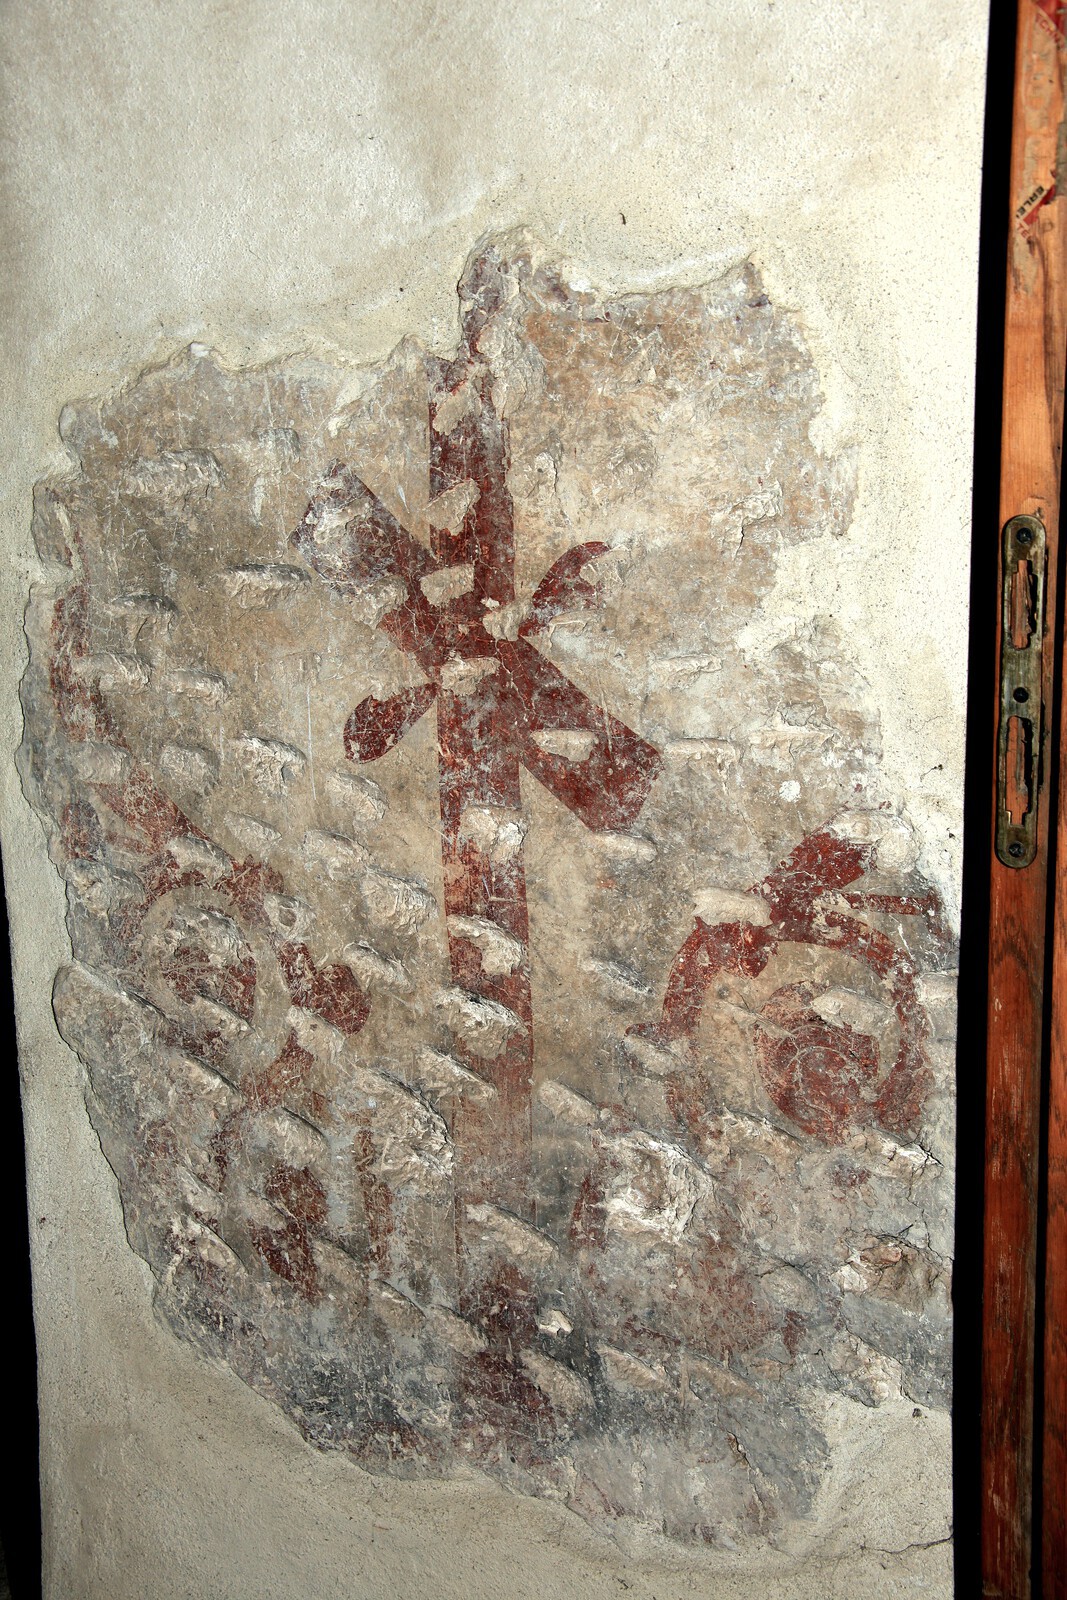 Remnants of foliated cross